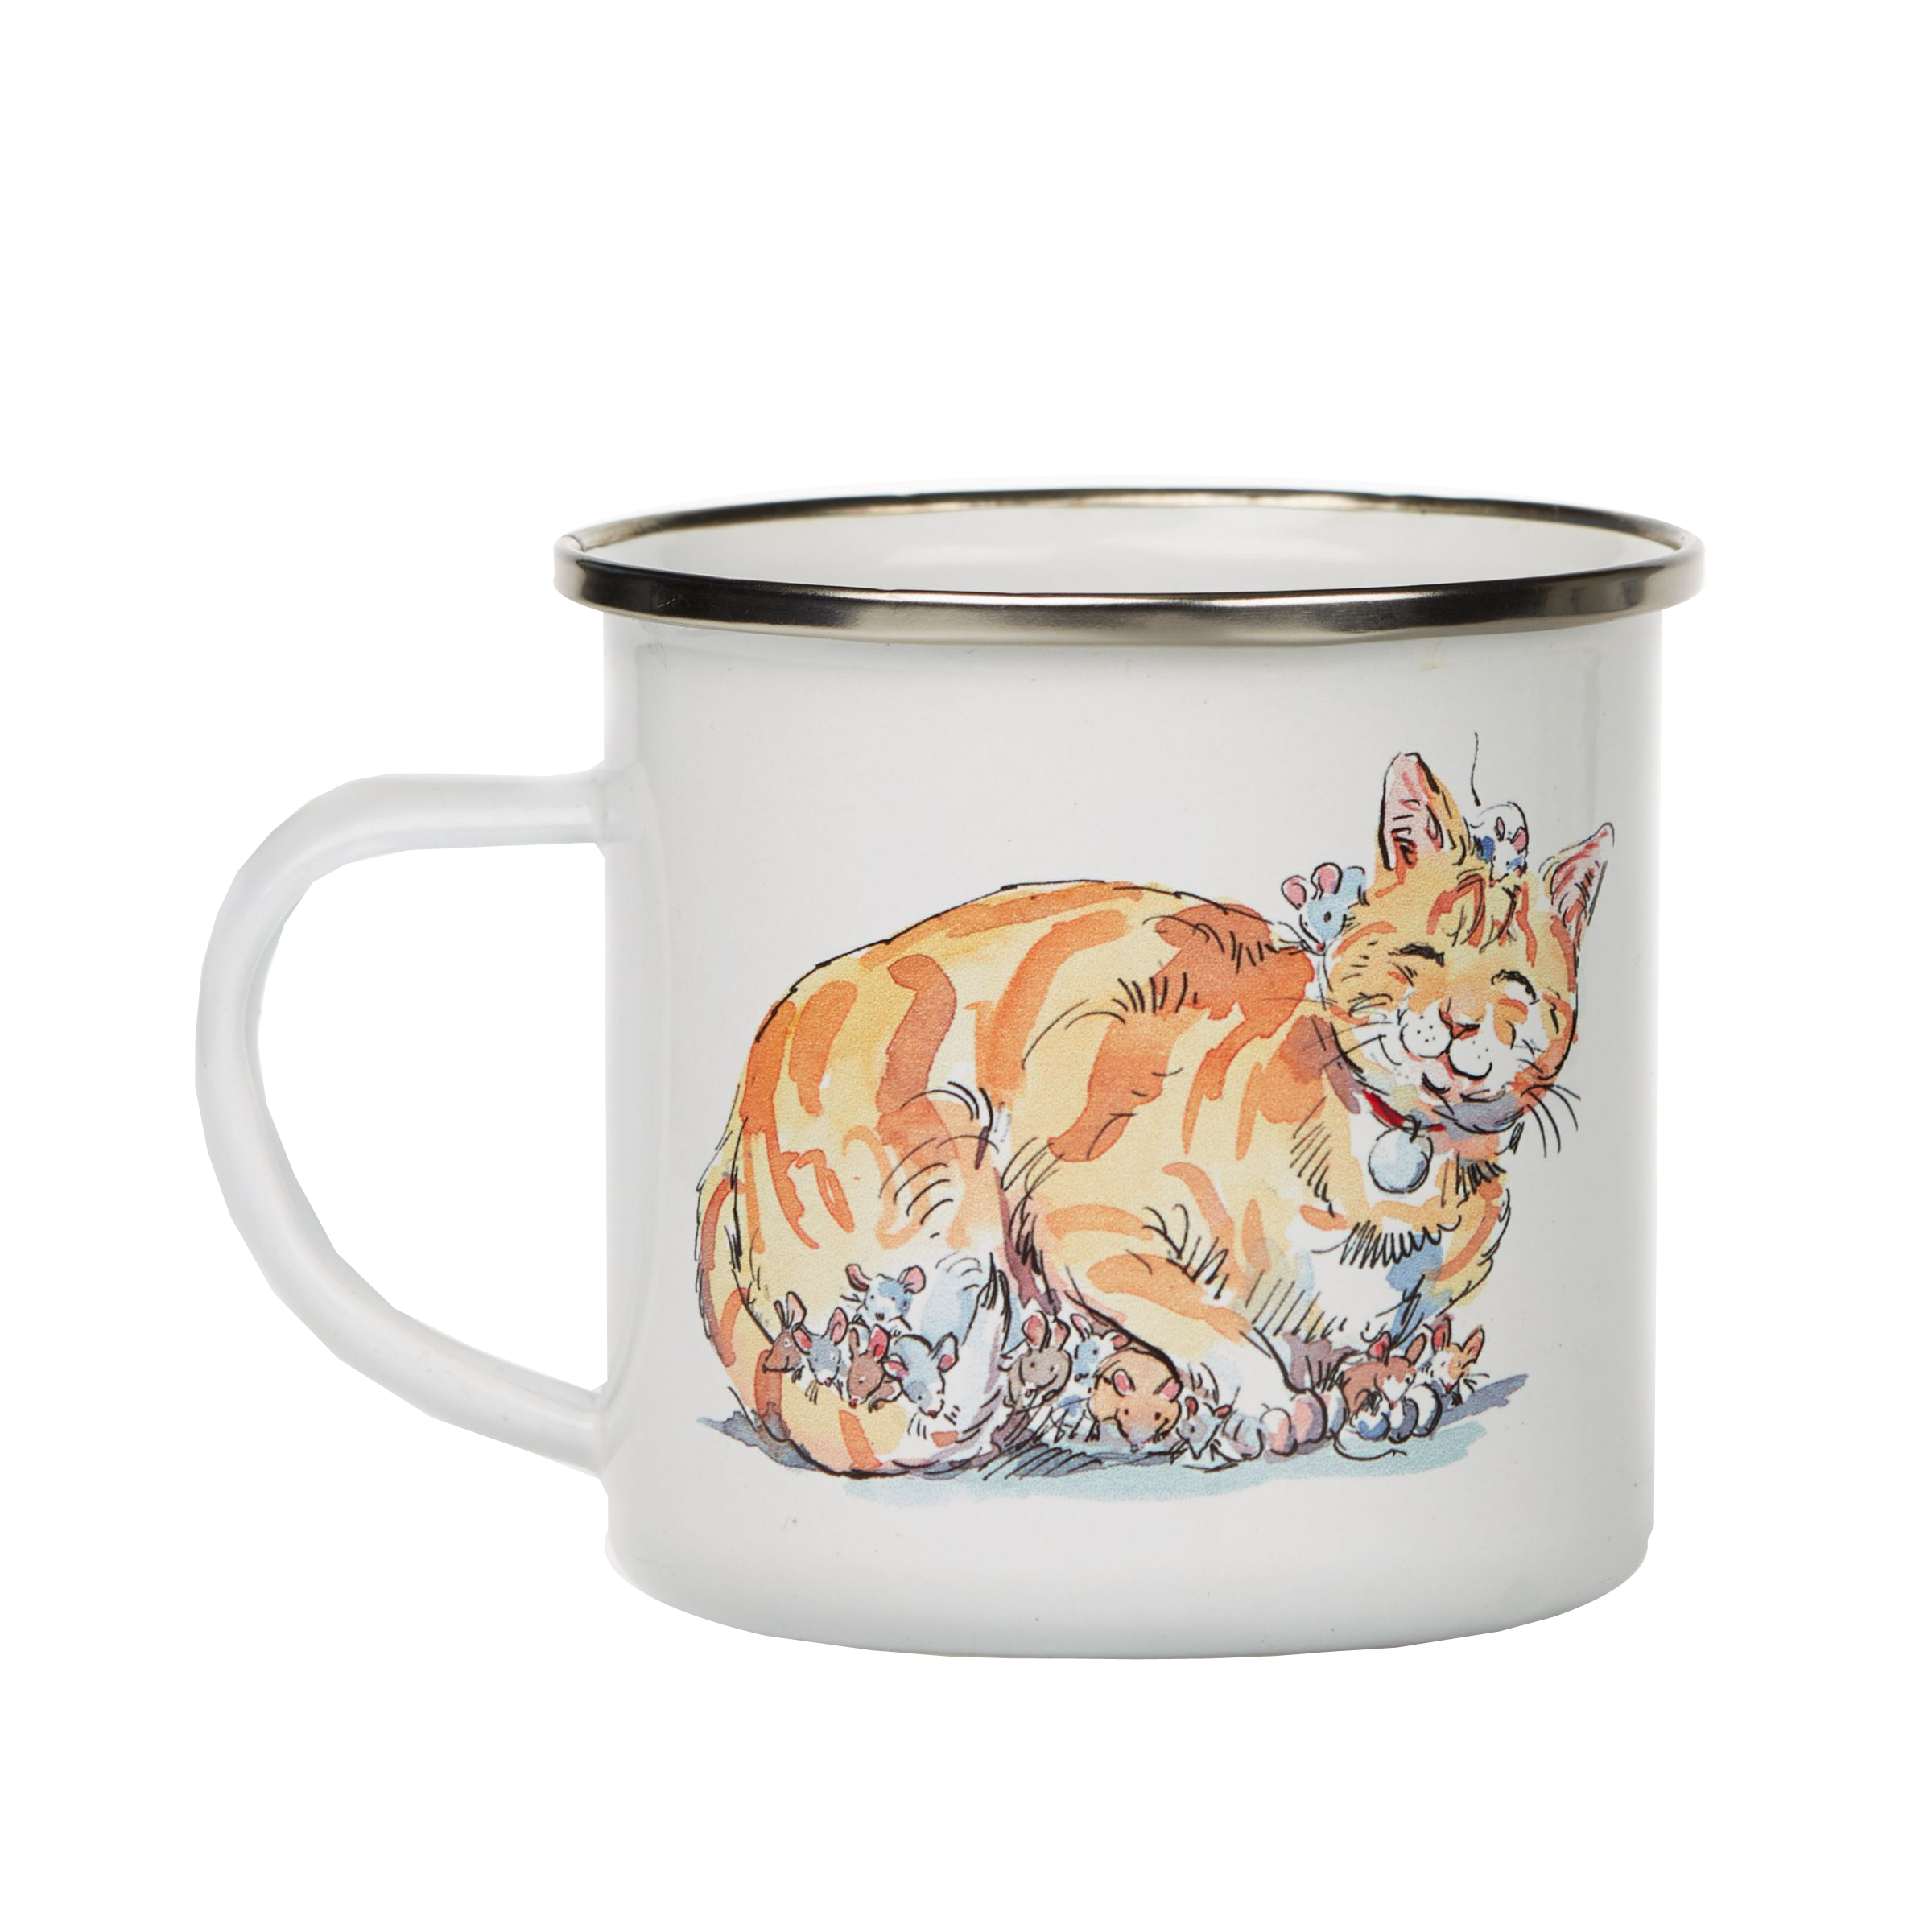 Tibs the Cat enamel mug